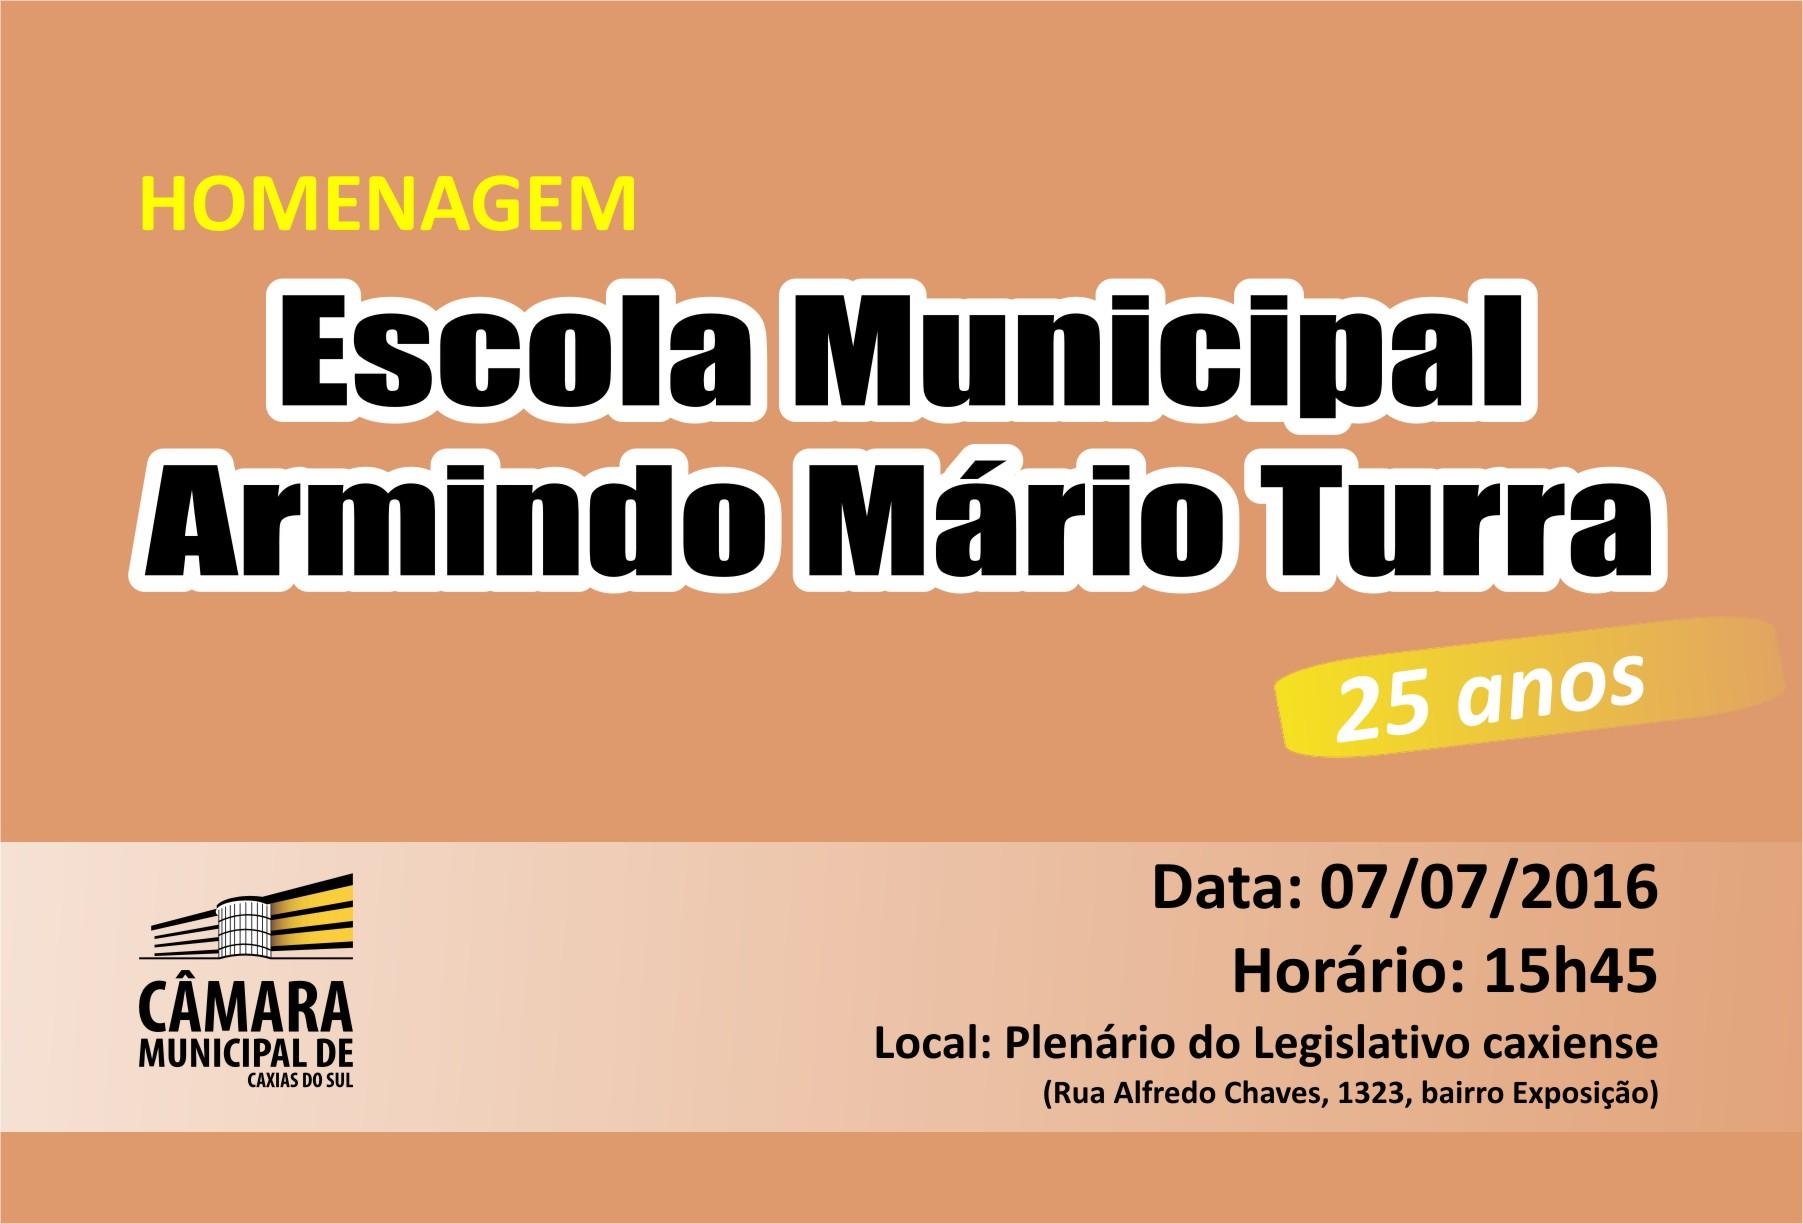 Legislativo de Caxias do Sul celebra os 25 anos da Escola Municipal Armindo Mário Turra nesta quinta-feira